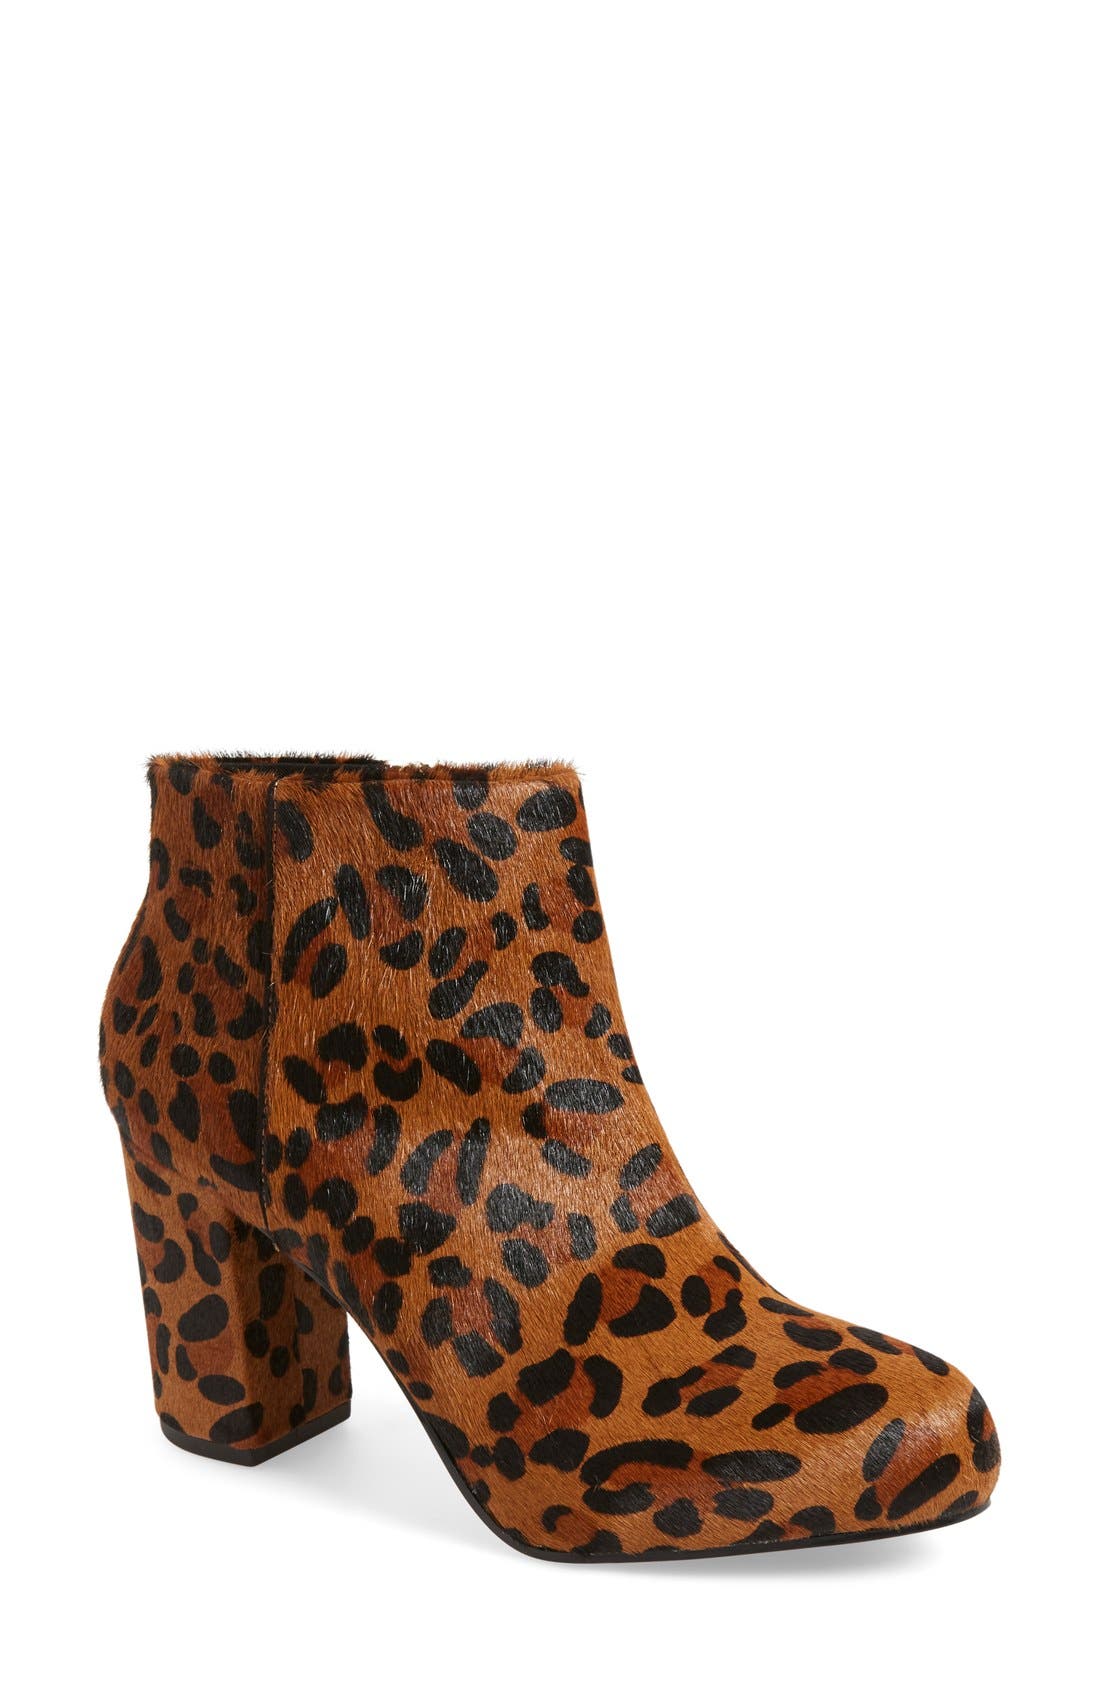 leopard print boots topshop